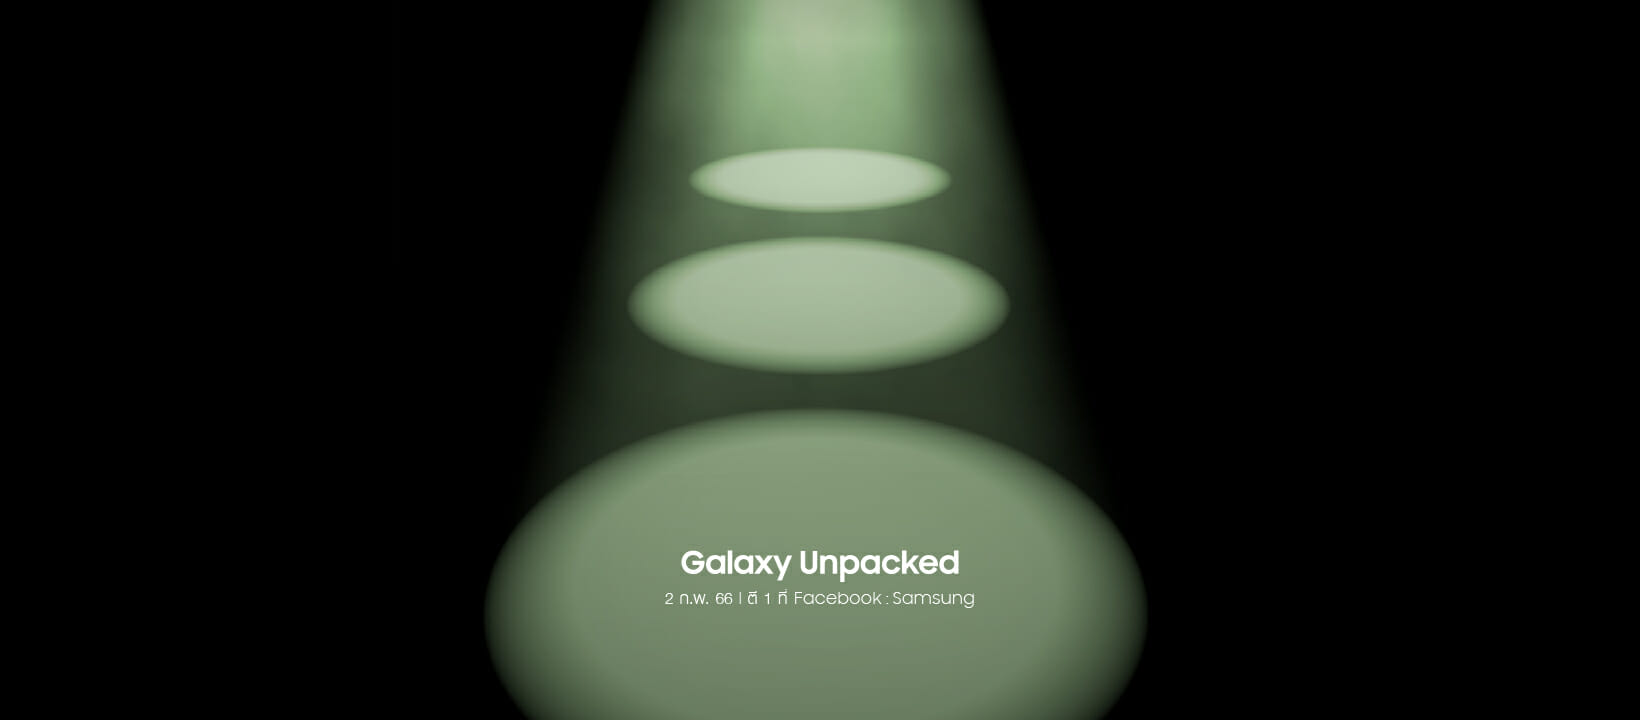 เตรียมพบกับความ “พี๊คคค” ที่จะมาขโมยทุกซีน! Samsung ชวนชม Galaxy Unpacked พร้อมกัน 2 ก.พ.นี้ ตามเวลาประเทศ 1